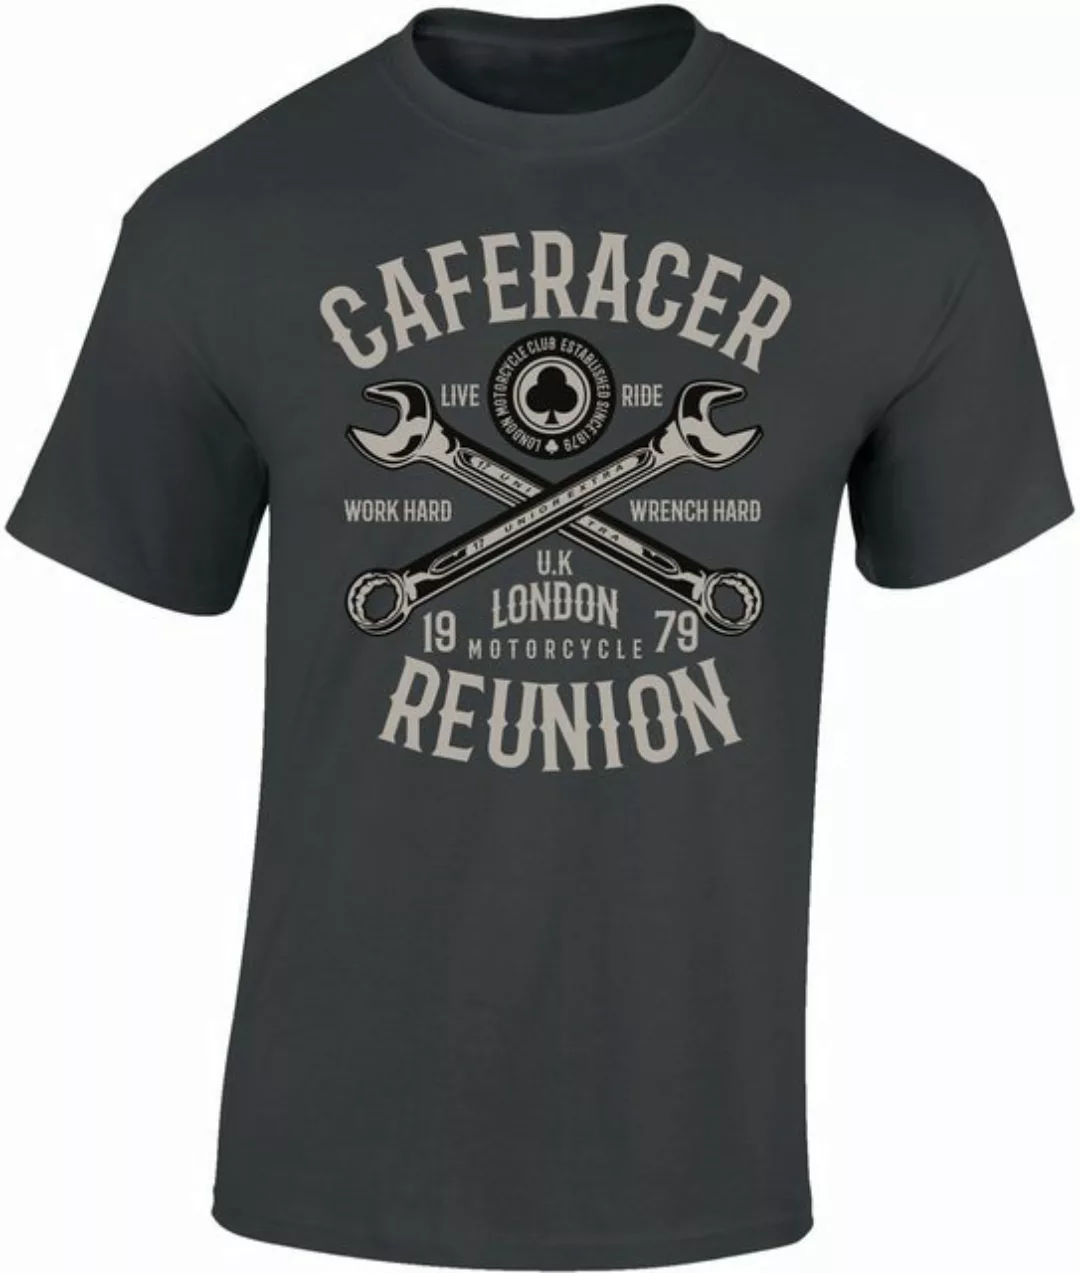 Baddery Print-Shirt Biker Shirt: "Cafe Racer Reunion" - Motorrad T-Shirt, h günstig online kaufen